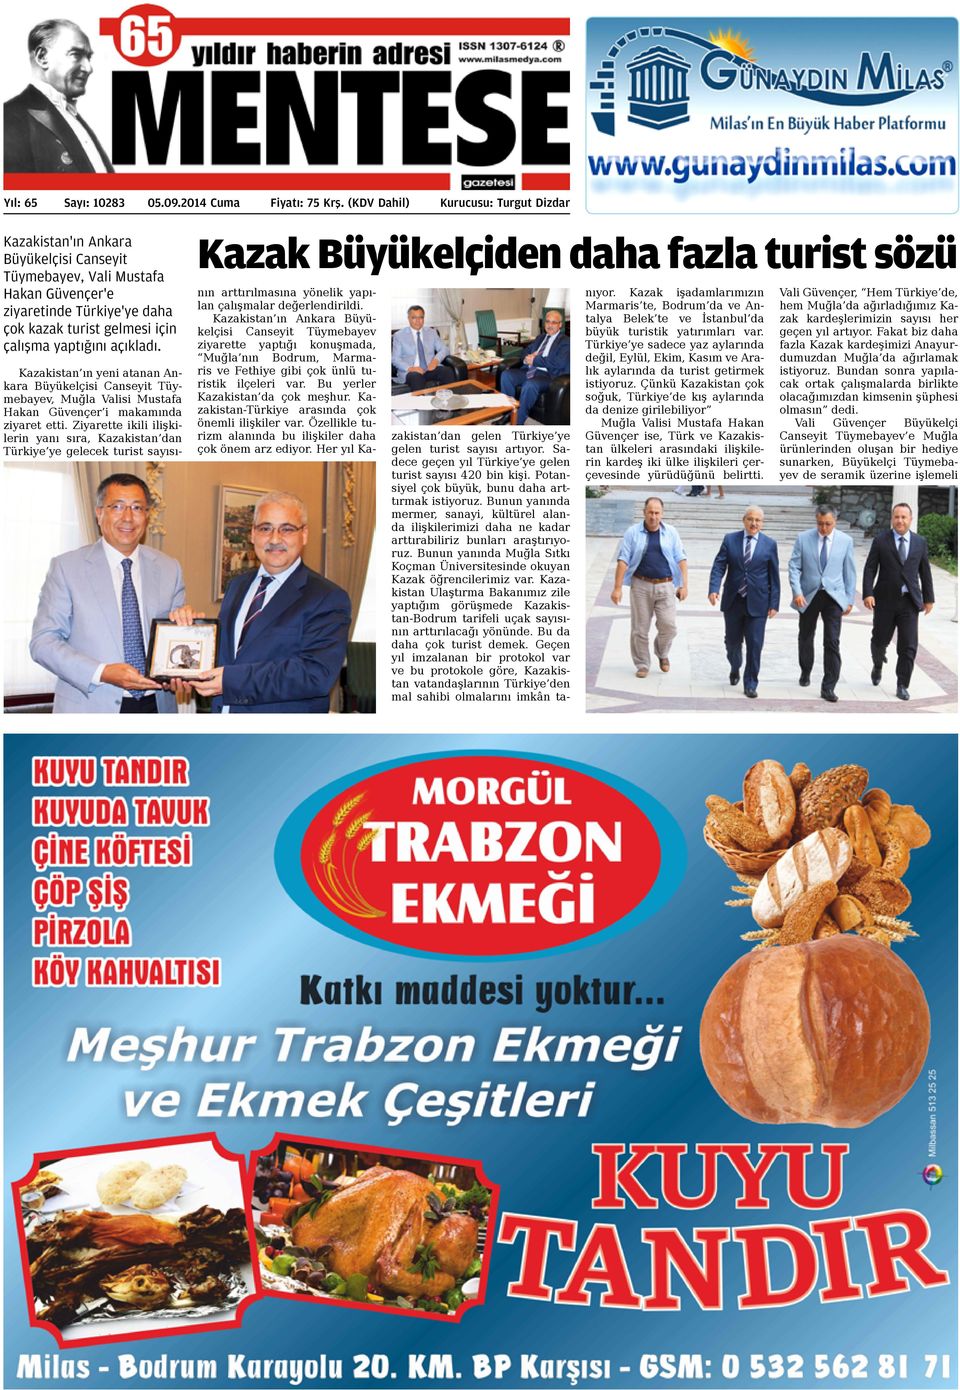 Kazakistan ın yeni atanan Ankara Büyükelçisi Canseyit Tüymebayev, Muğla Valisi Mustafa Hakan Güvençer i makamında ziyaret etti.